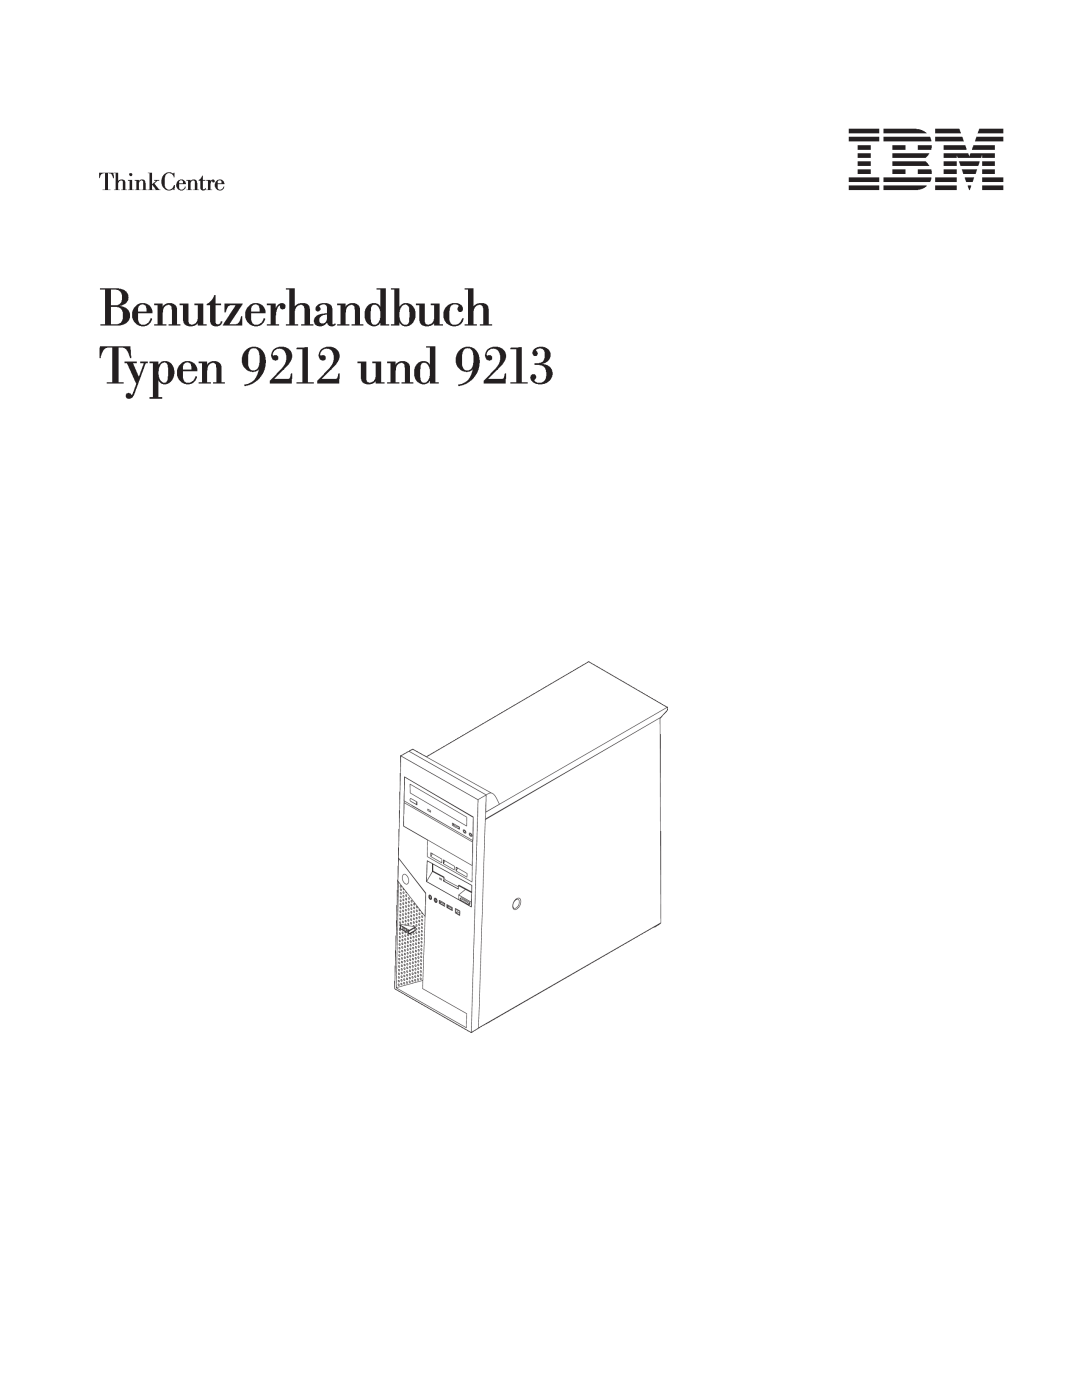 IBM 9213 manual Benutzerhandbuch Typen 9212 und, ThinkCentre 